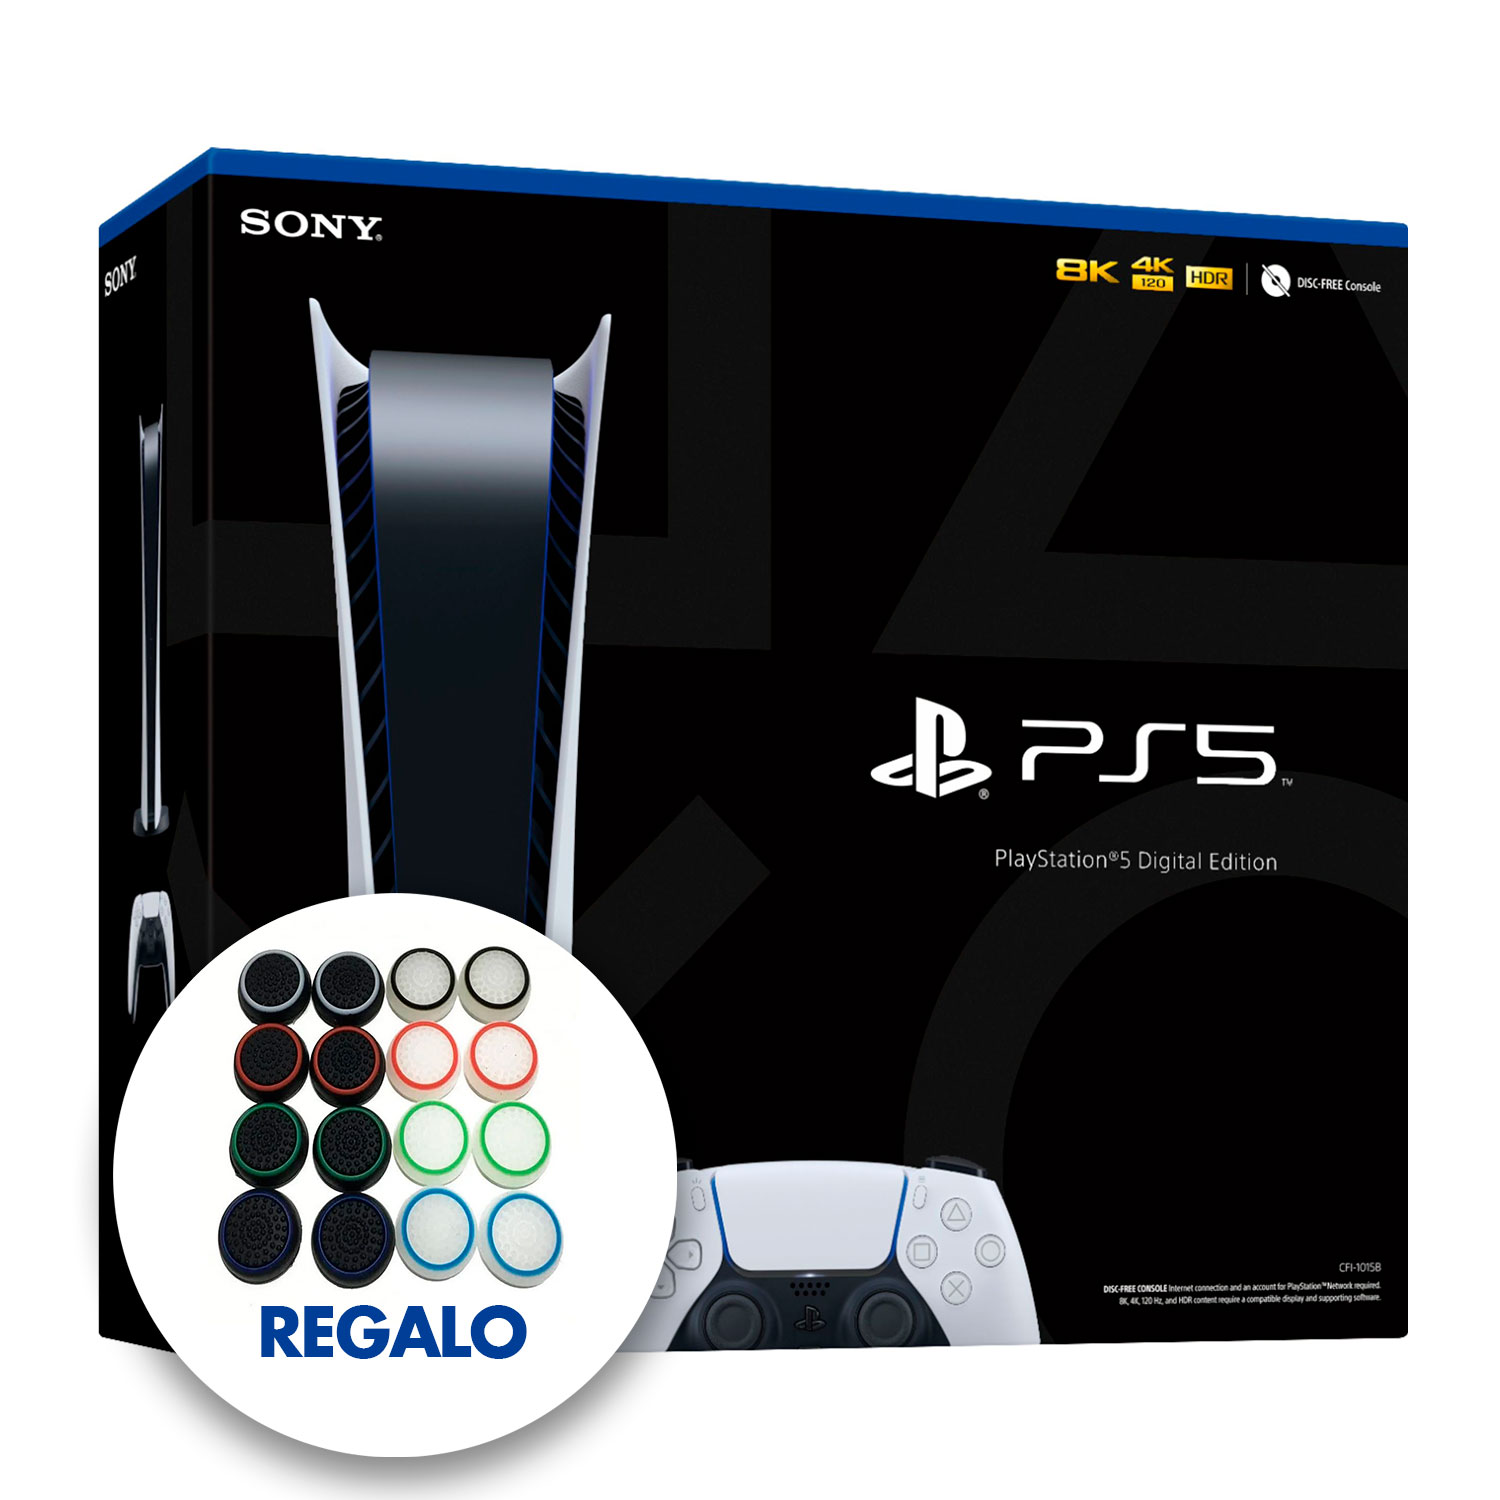  Playstation 5 PS5 - Consola de juegos versión de disco - CPU  AMD Ryzen Zen de 8 núcleos, AMD Radeon RDNA, memoria GDDR6 de 16 GB, SSD de  825 GB de